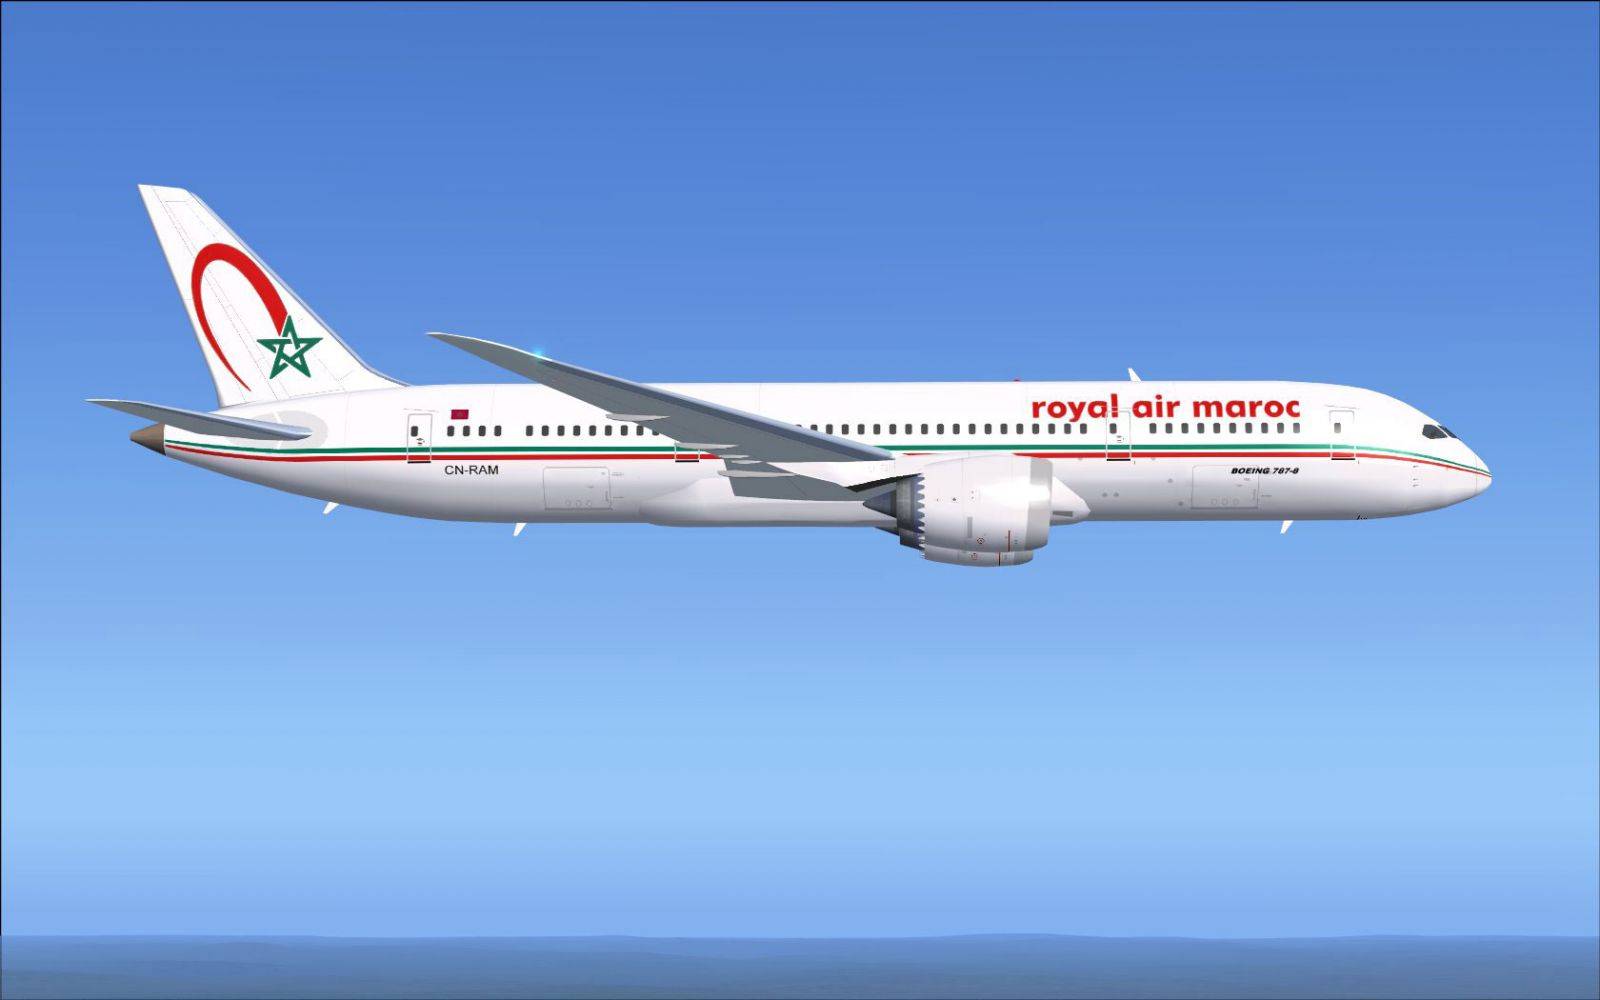 Royal air maroc — официальный сайт пассажиров